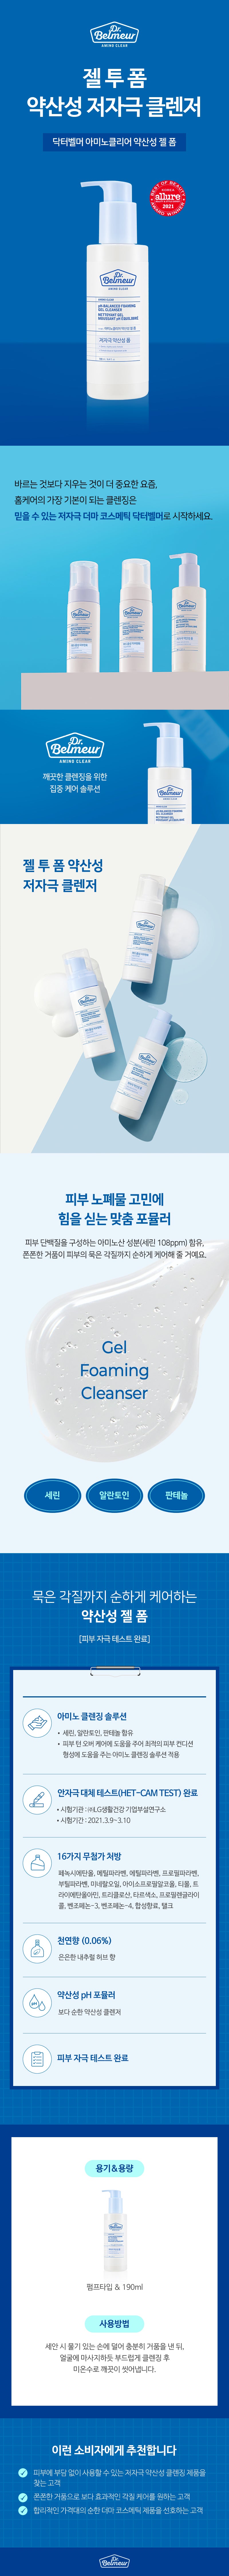 Dr.Belmeur_Amino Clear pH Balanced Foaming Gel Cleanser 190ml_1